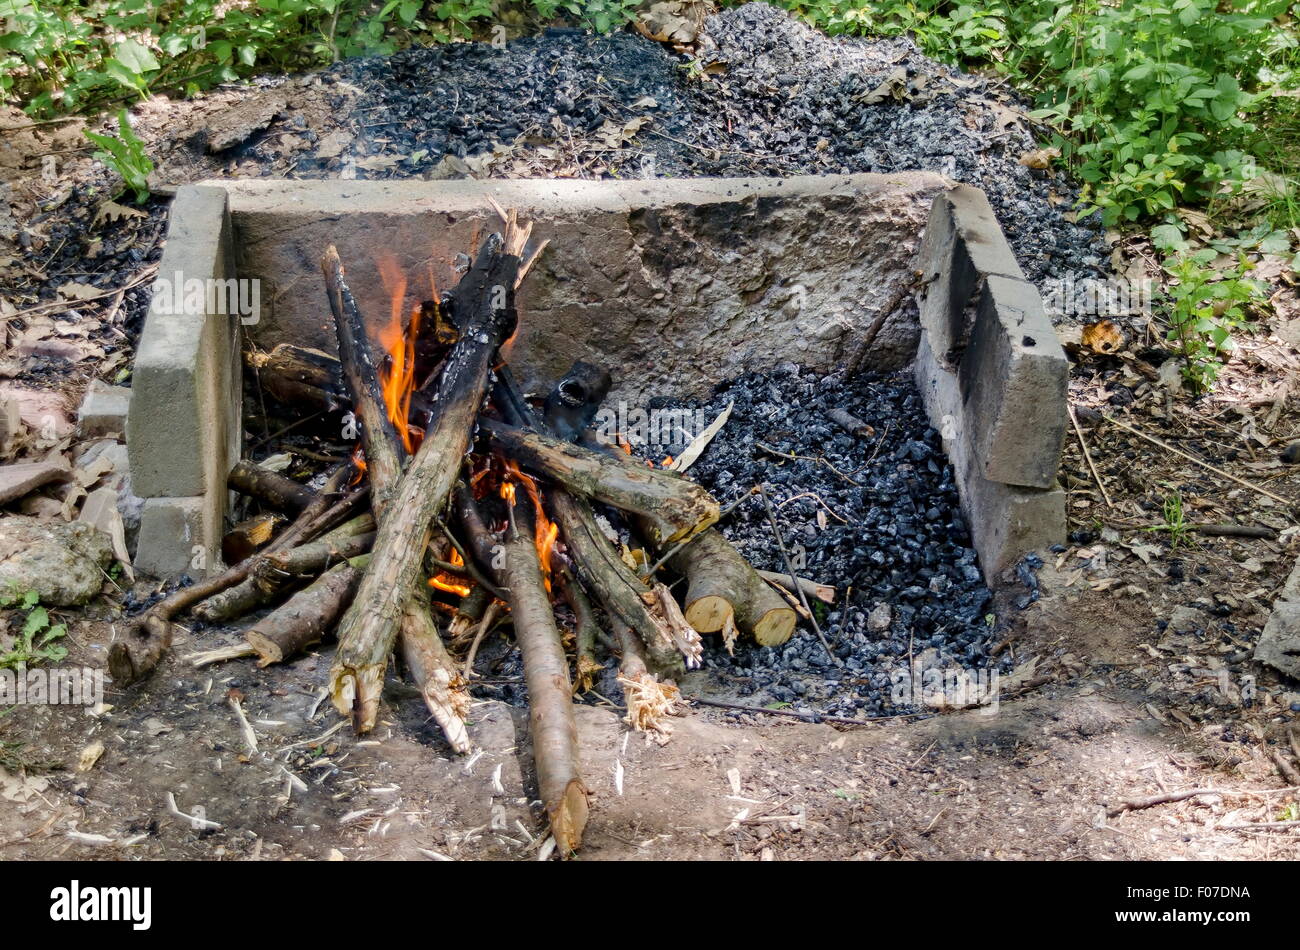 Cheminée mexicaine charbon de bois Leaf, bronze